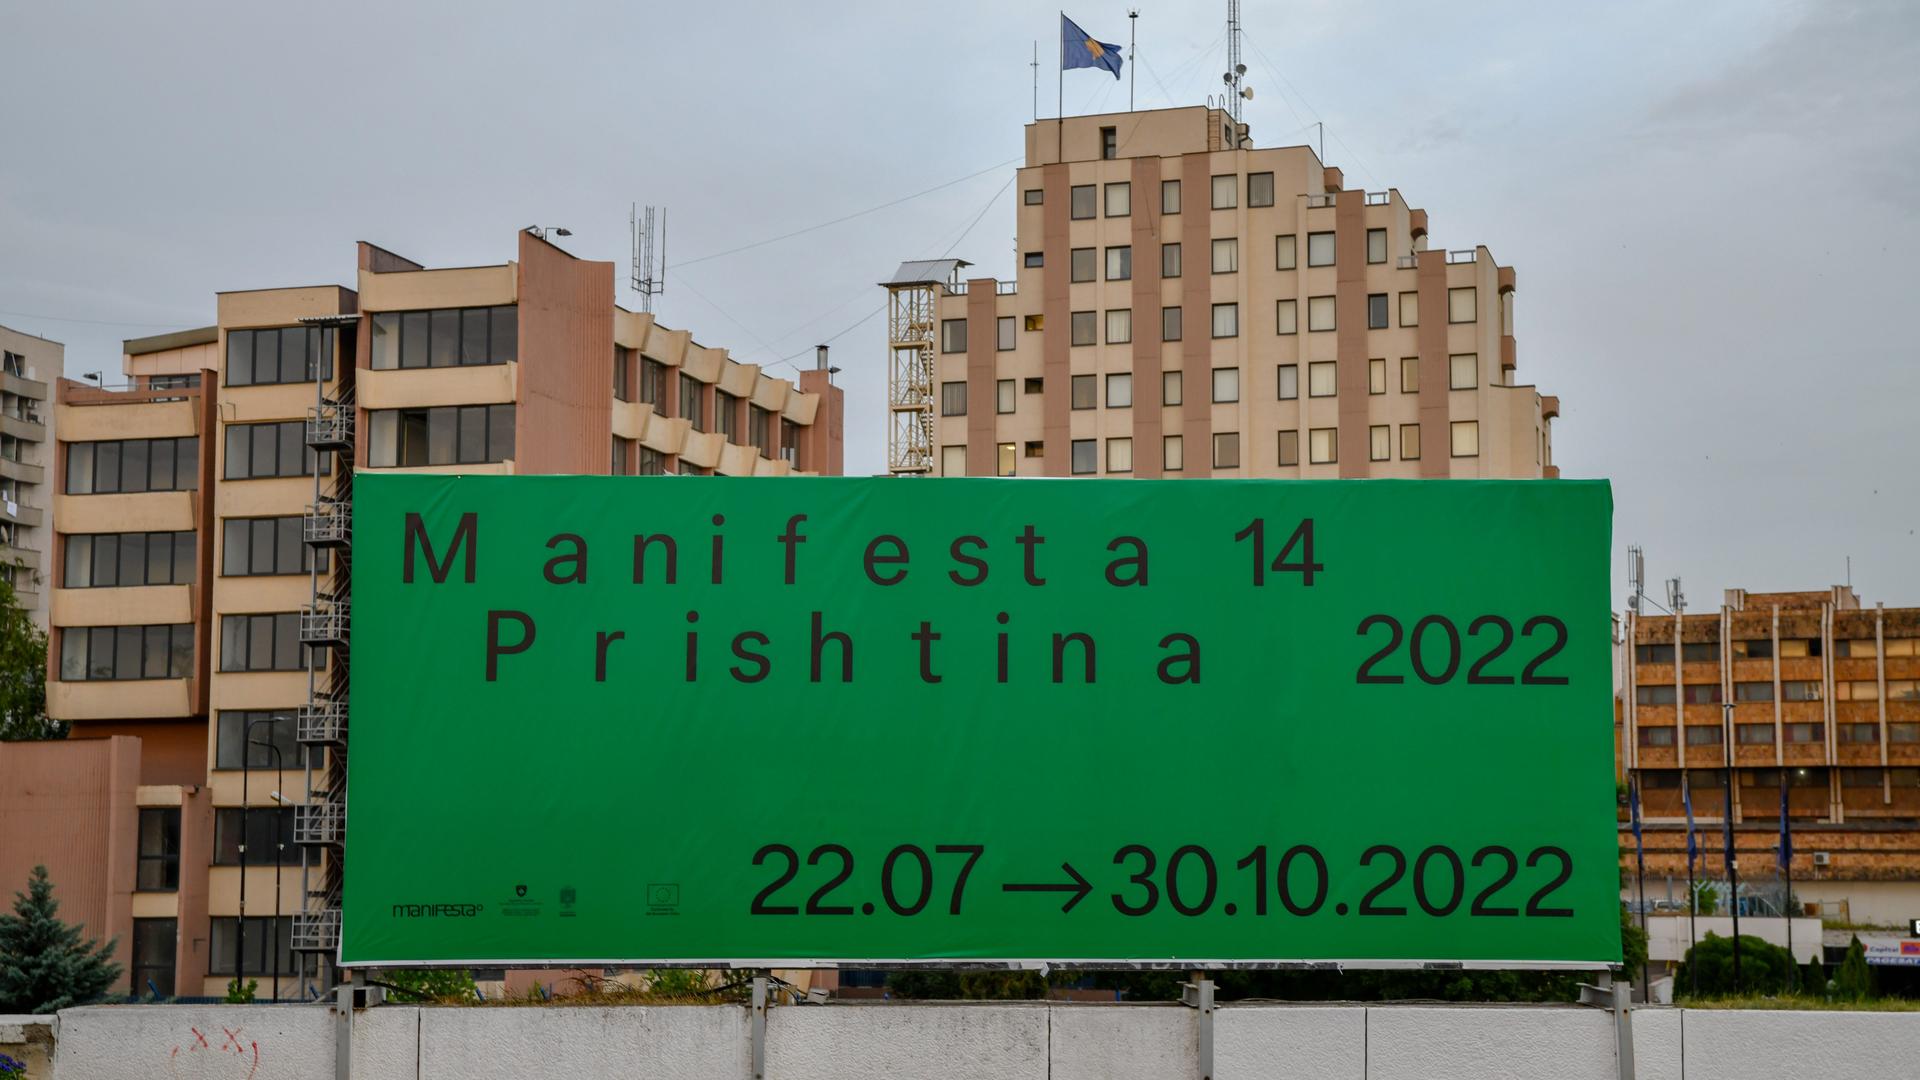 Ein großes günes Plakat mit der Aufschrift "Manifesta 14 / Prishtina 2022" hängt vor einem Wohnblock.